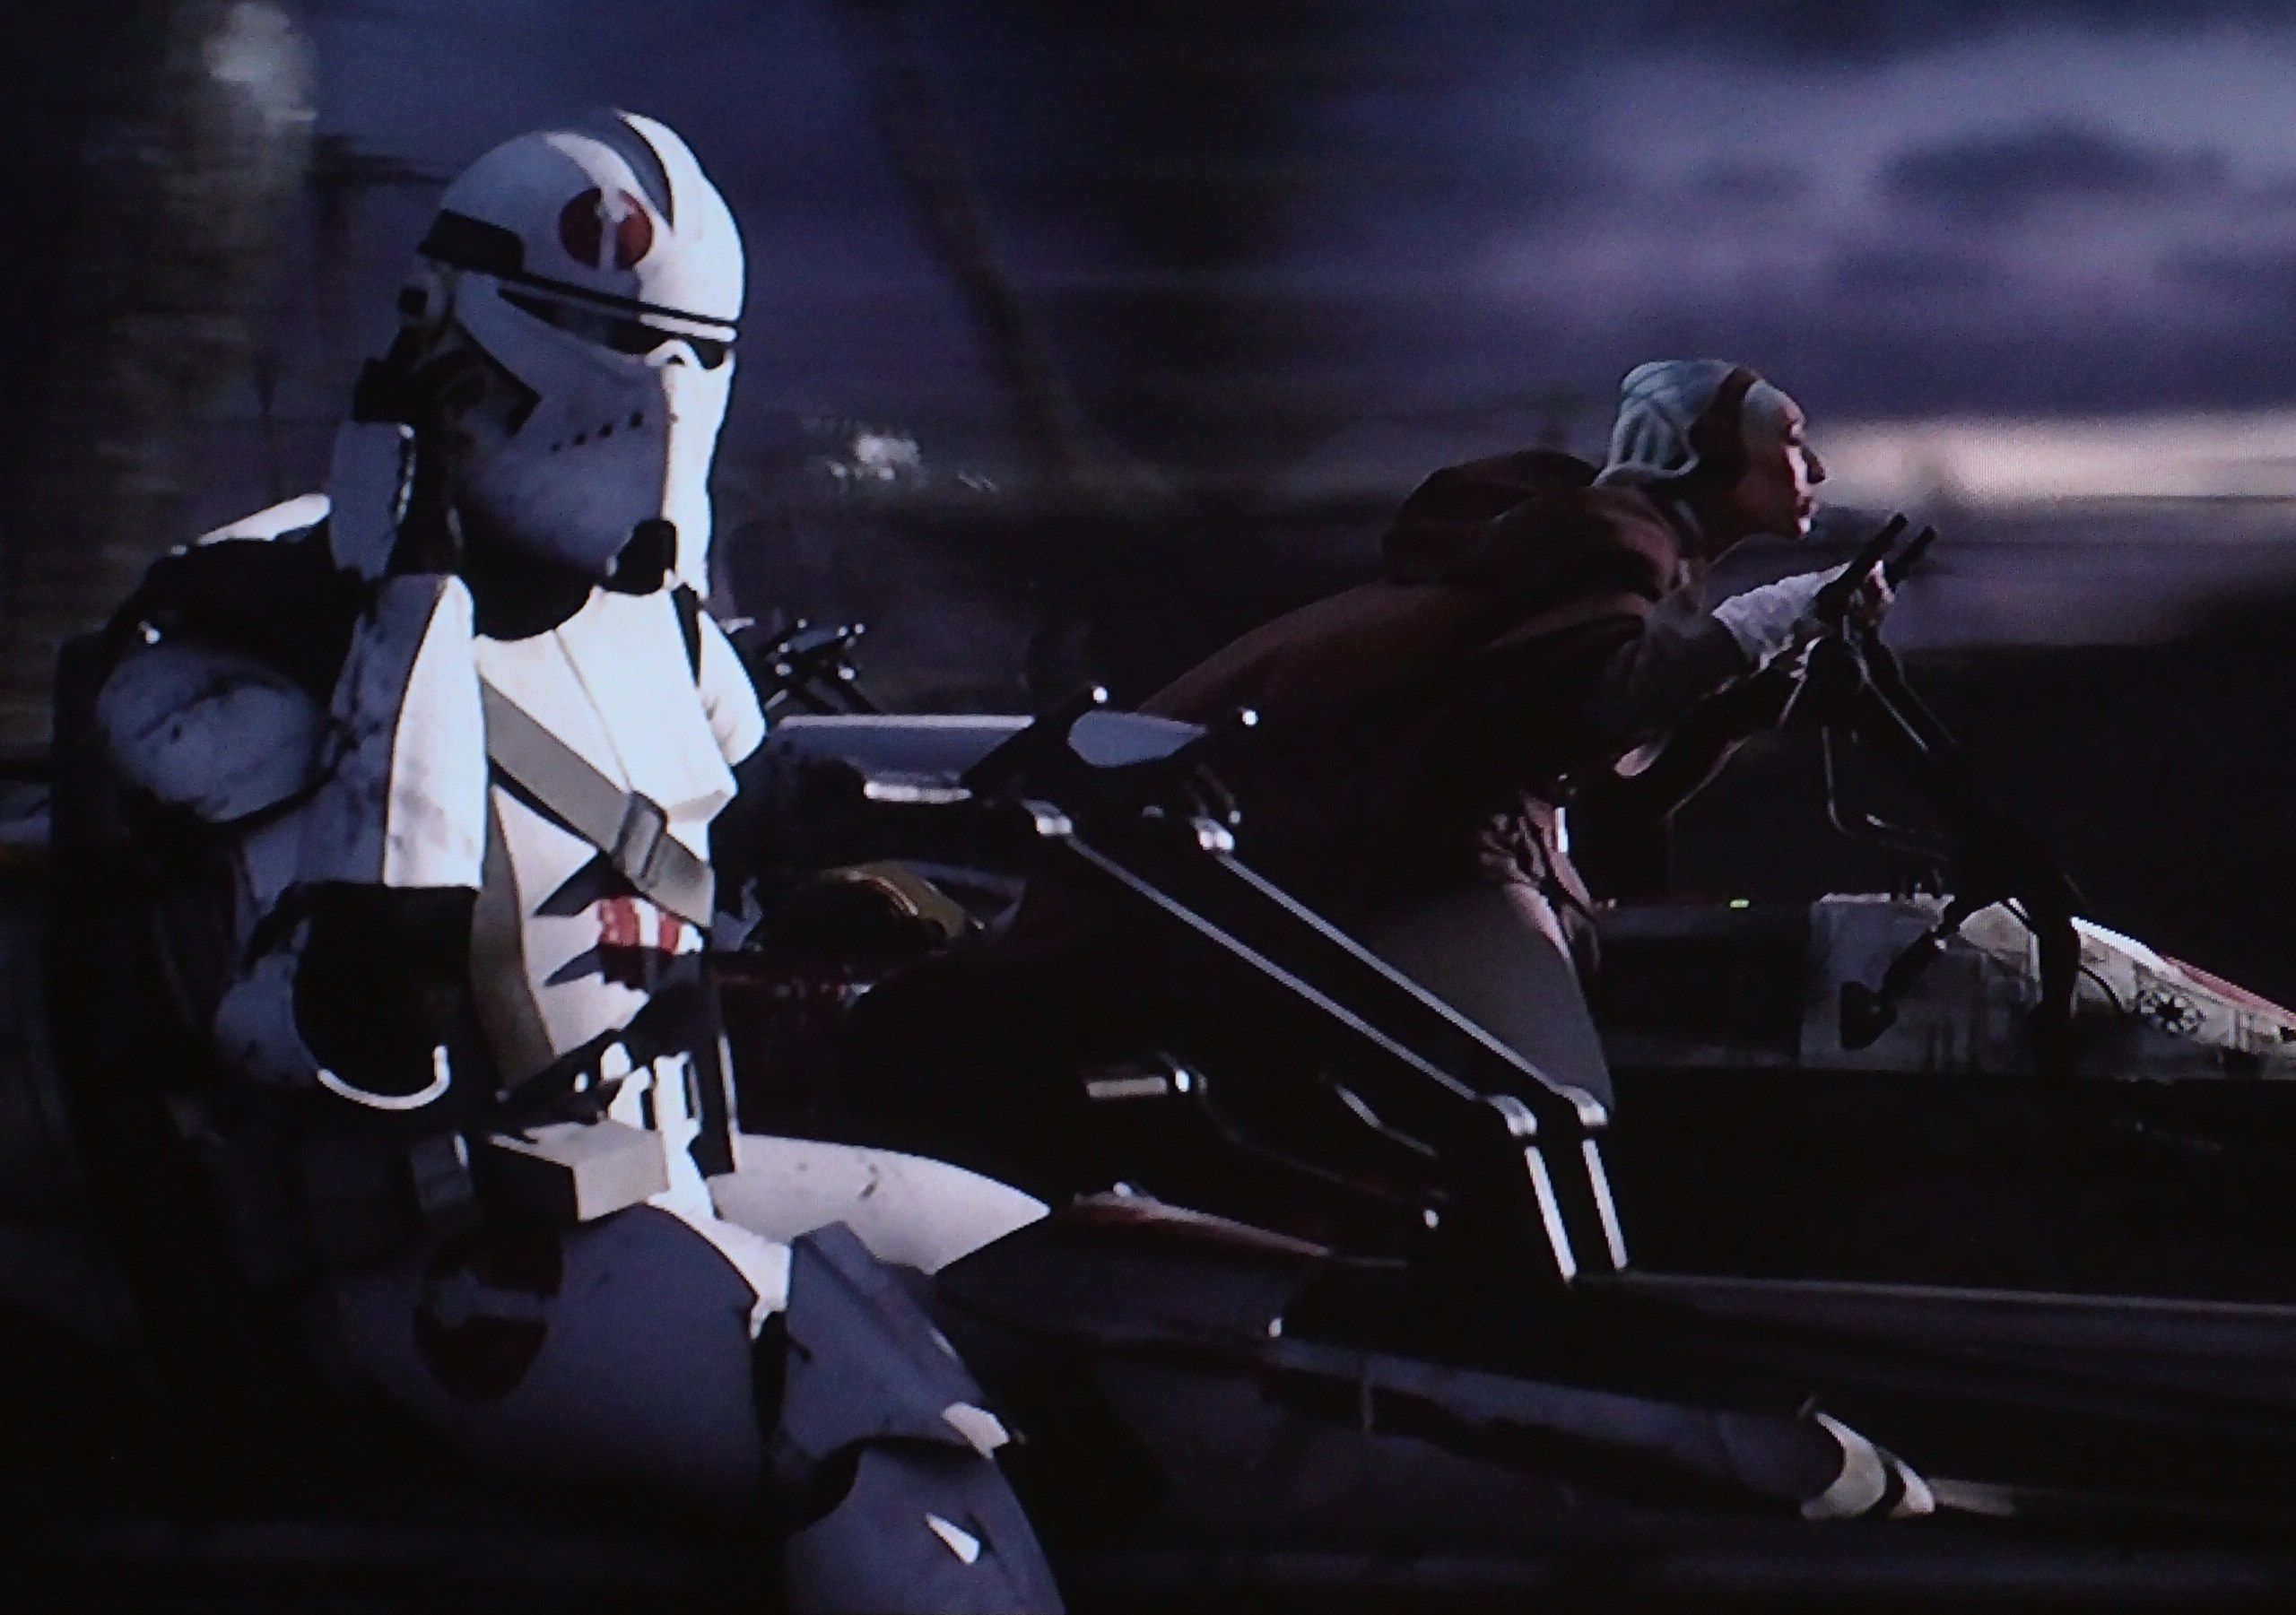 star wars clone trooper wallpaper,persönliche schutzausrüstung,helm,erfundener charakter,bildschirmfoto,fahrzeug